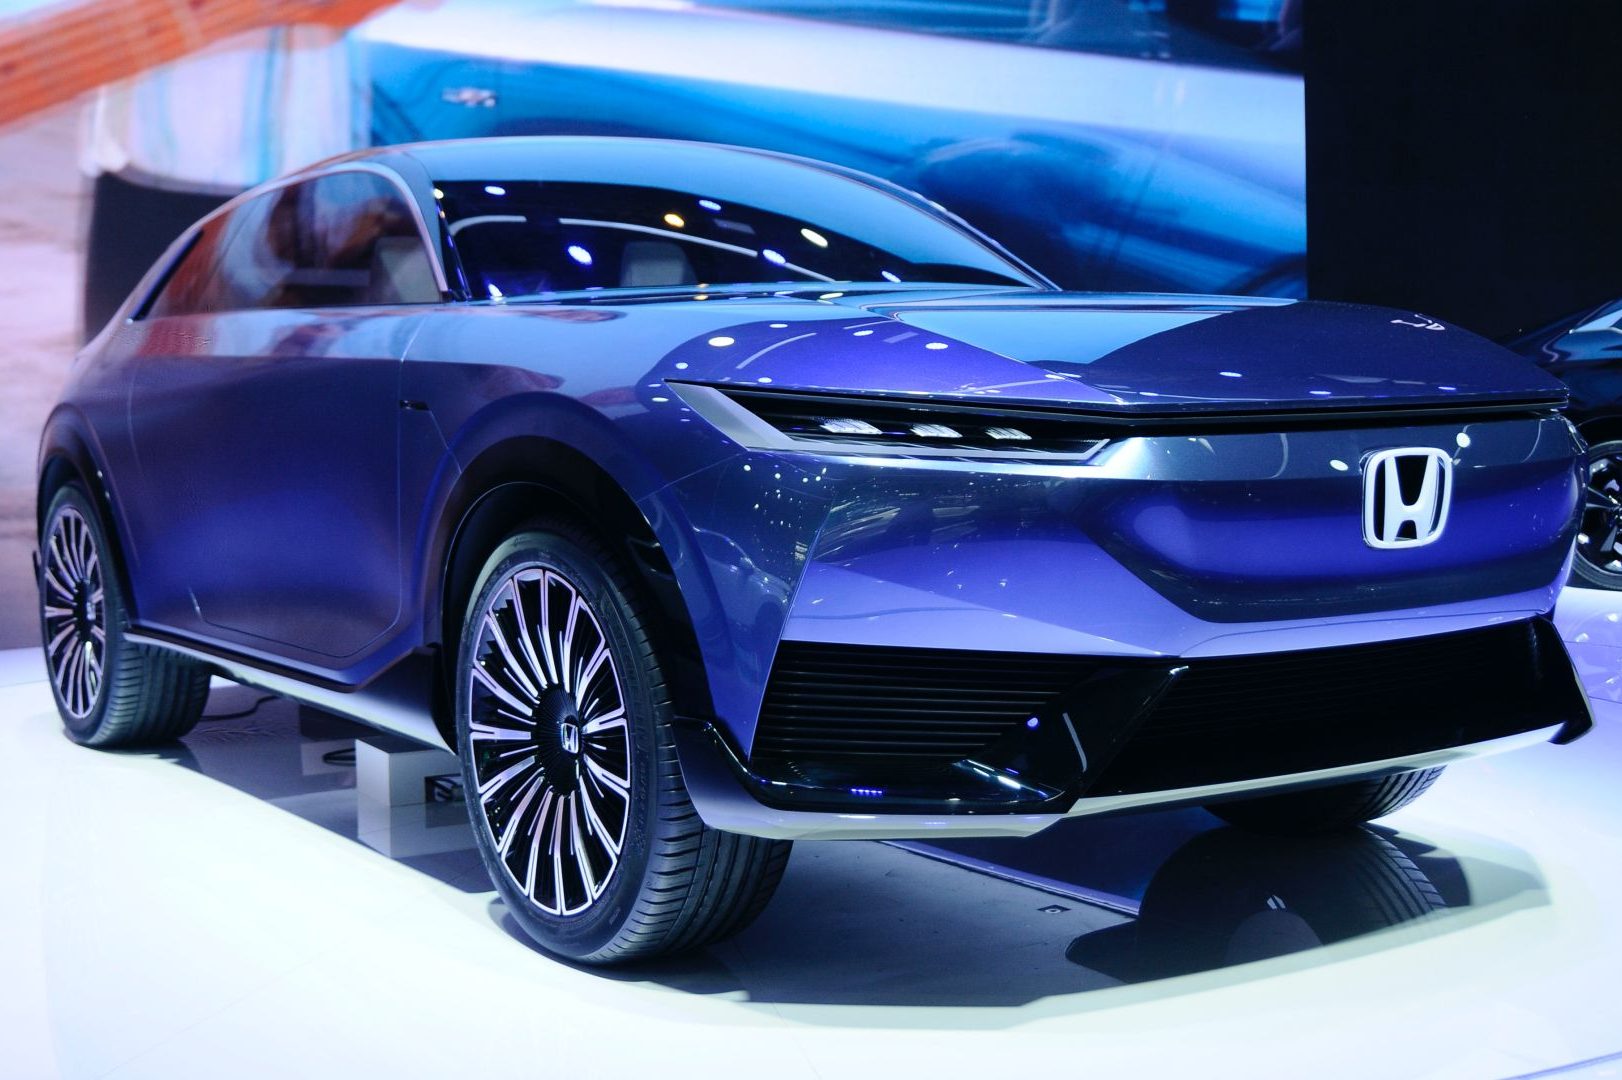 Hond-SUV-econcept-at-2020-Beijing-Auto-Show-2-e1601487637998.jpg